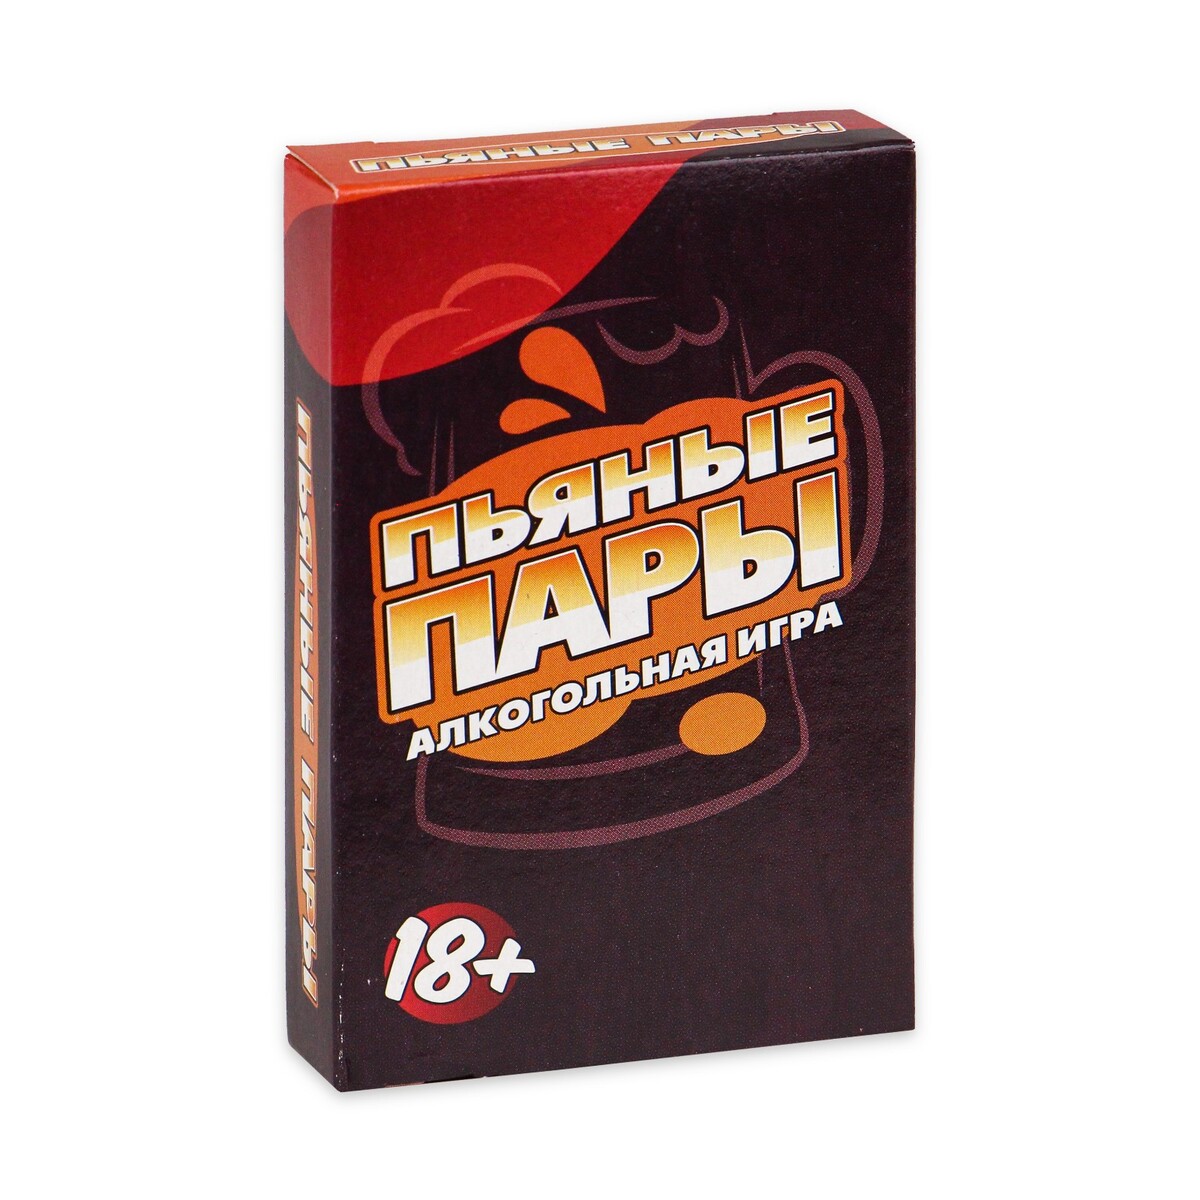 Карточная игра для веселой компании взрослых, алкогольная карточная игра для весёлой компании алкогольная алкослабо 54 карточки 18